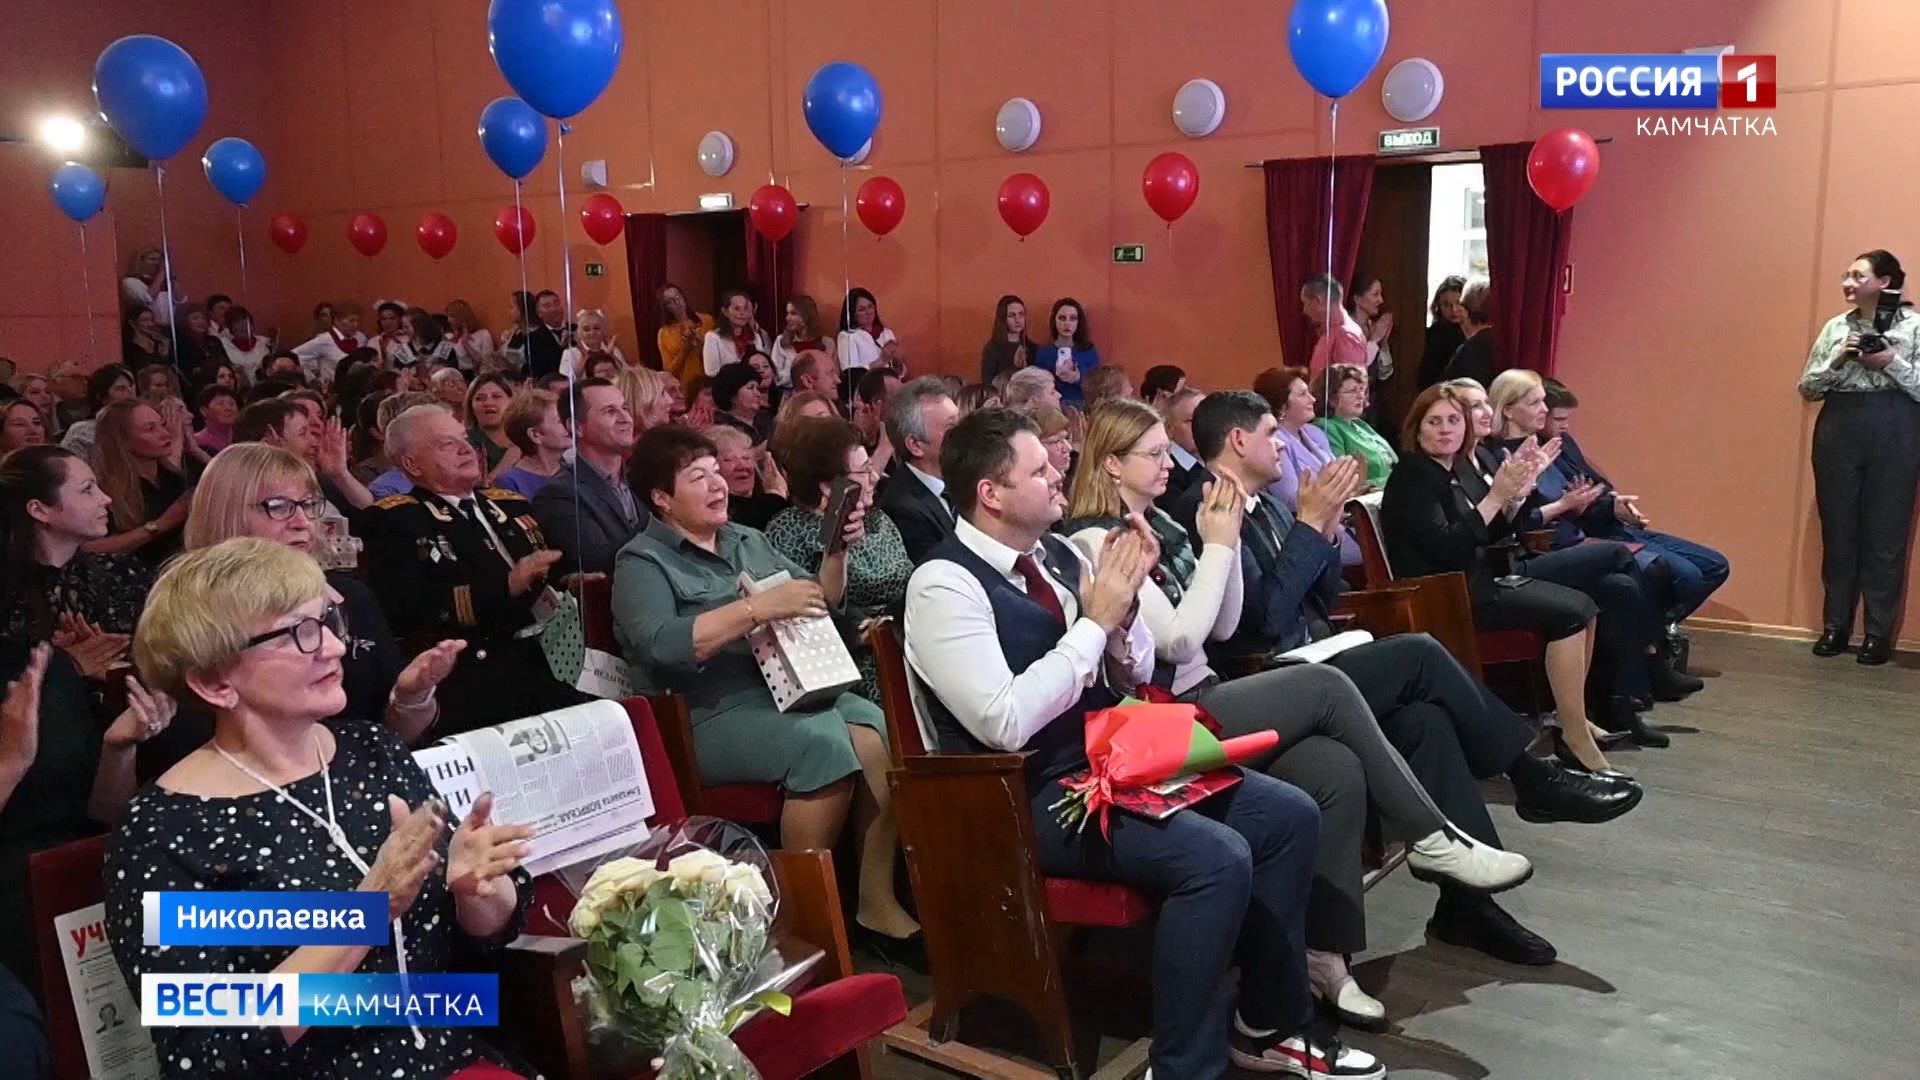 Николаевская школа отпраздновала свой юбилей || Вести-Камчатка